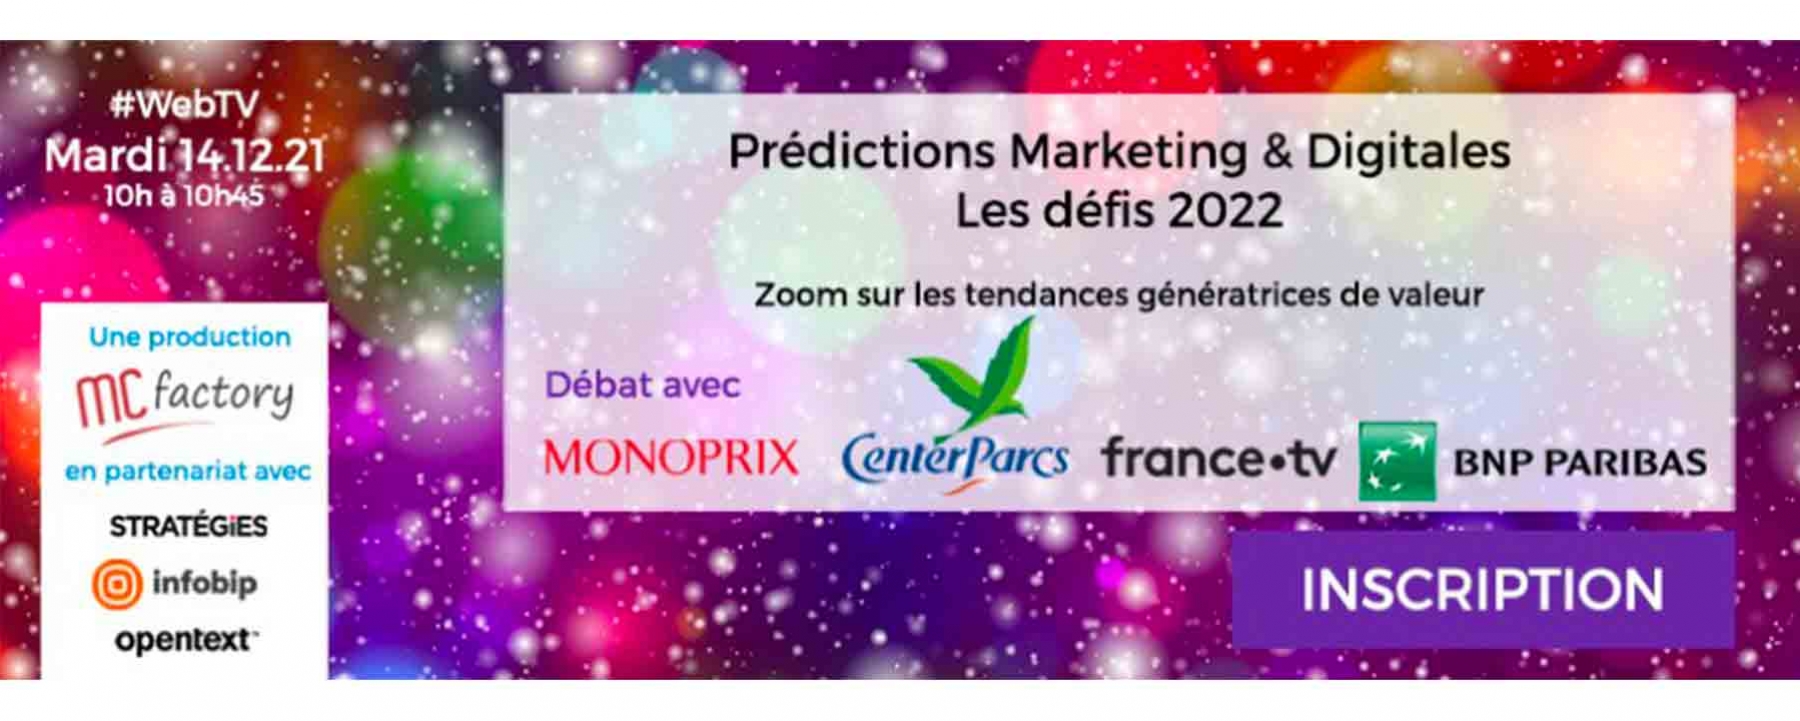 Prédictions Marketing & Digitales – Les défis 2022 MC Factory